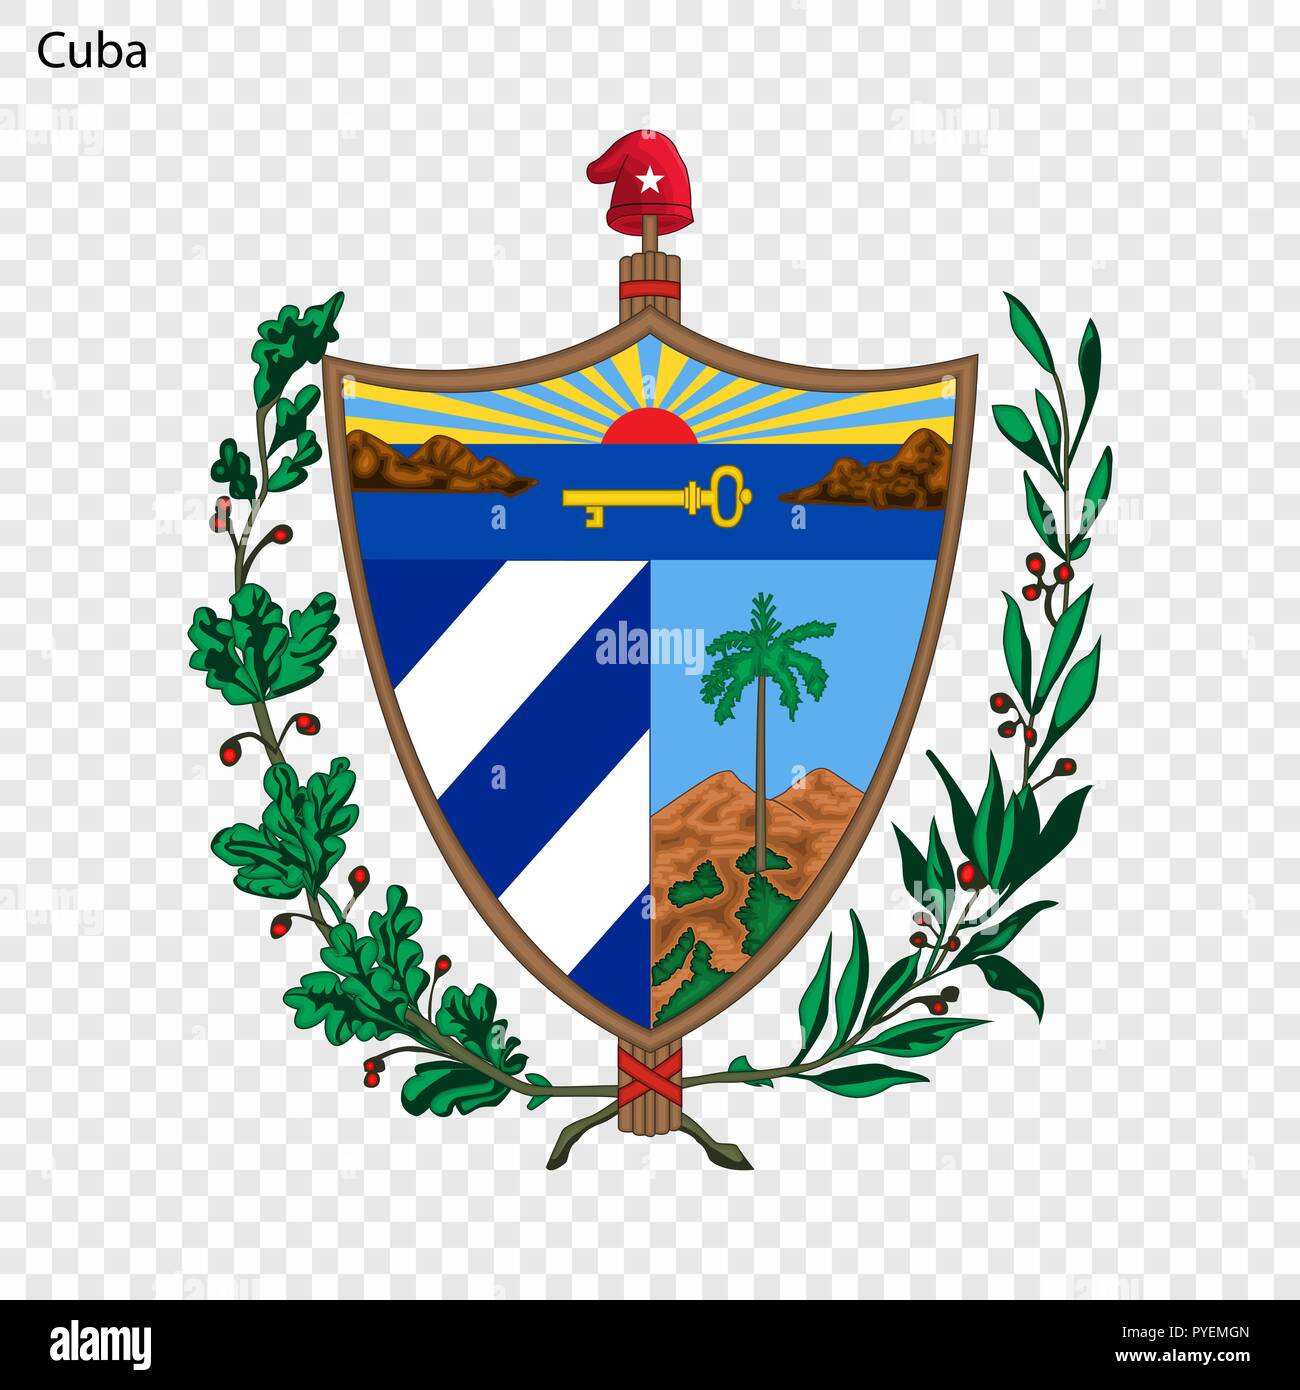 Symbol of Cuba. National emblem Stock Vector